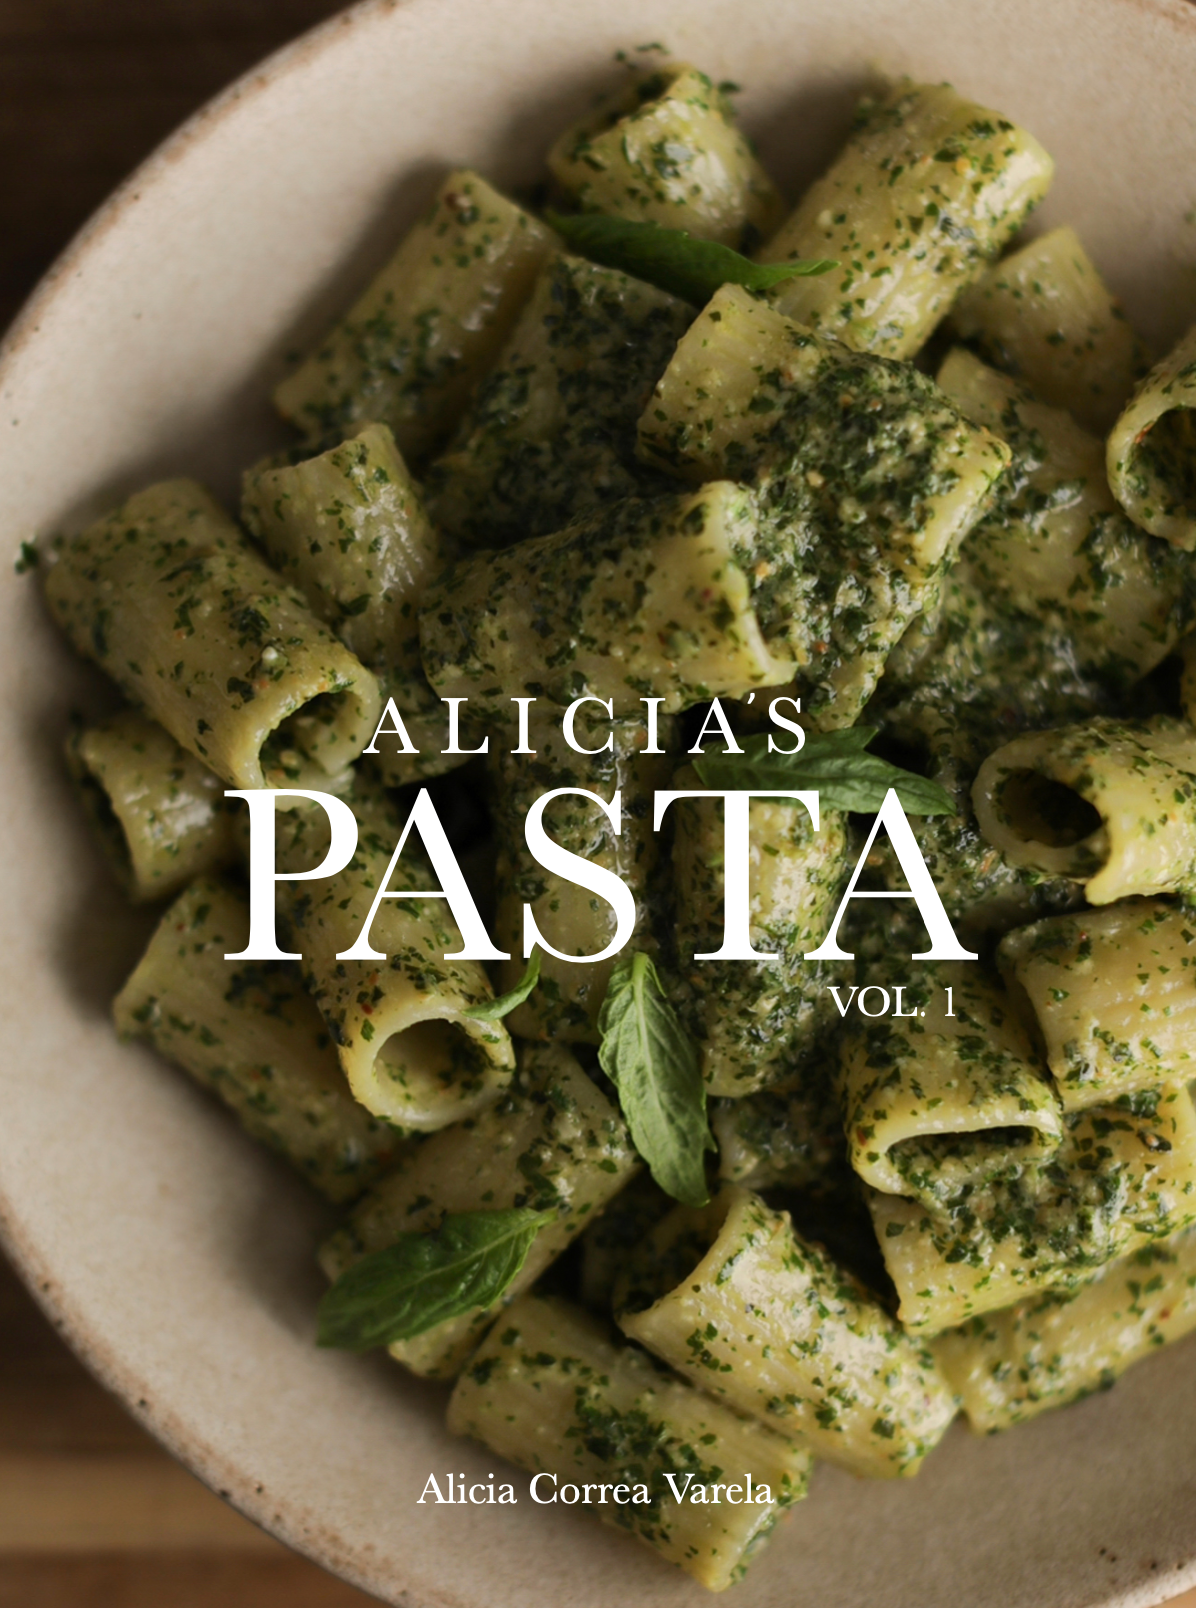 Alicia's Pasta